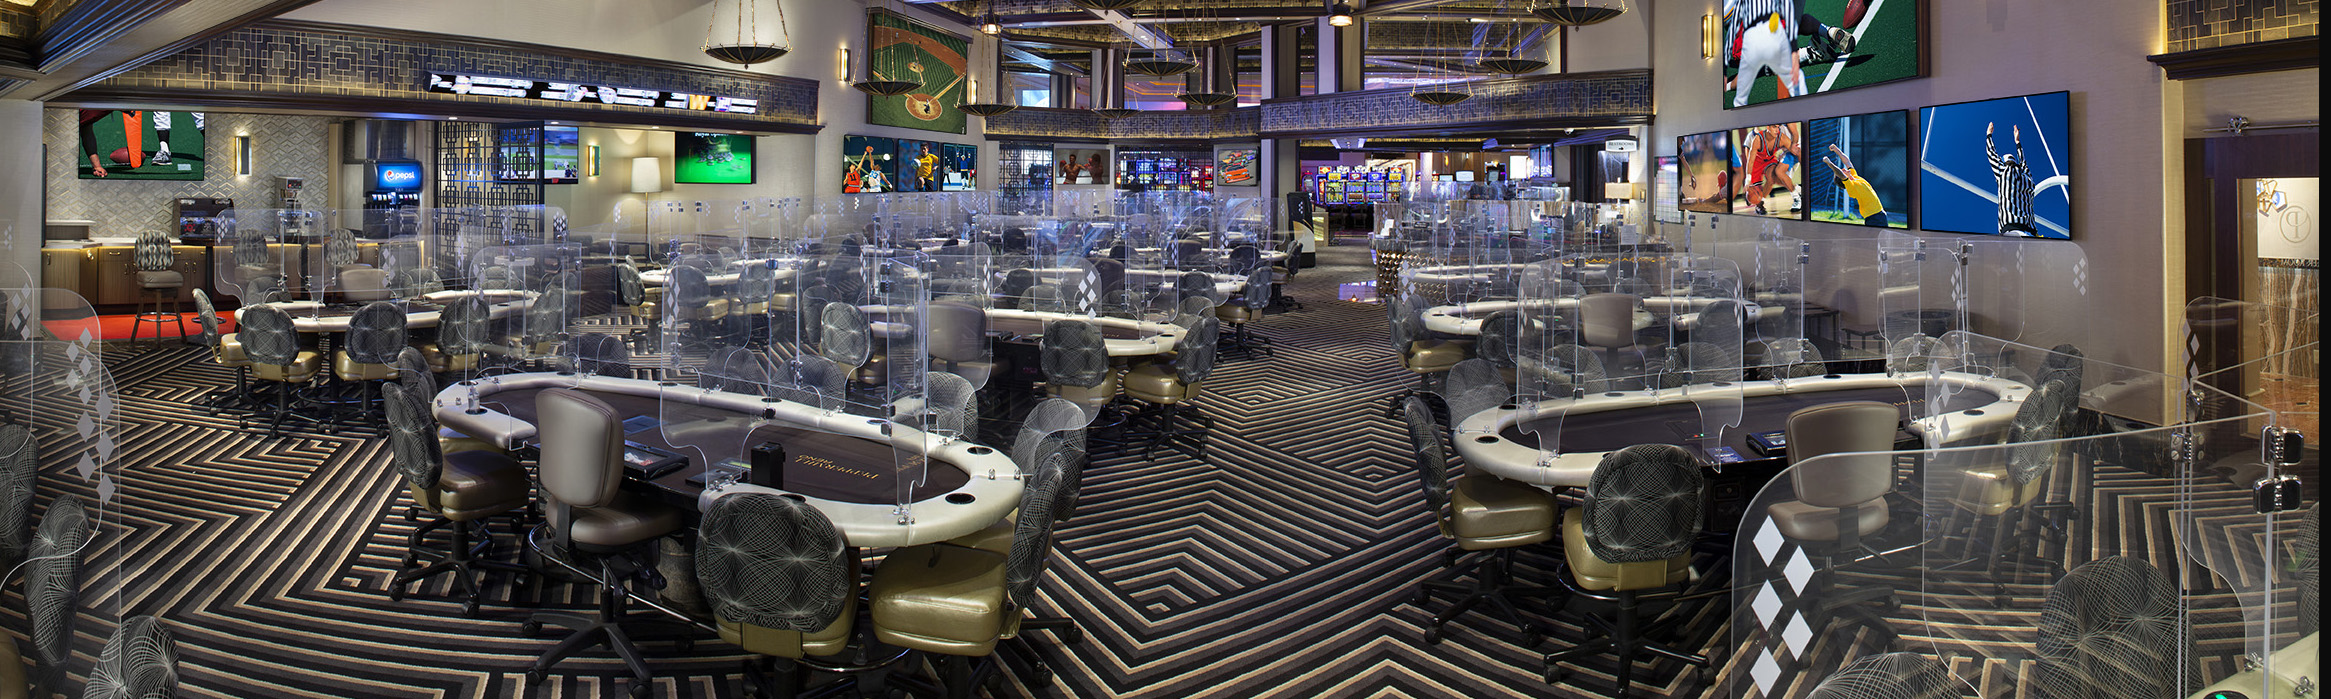 ocean resort casino poker room